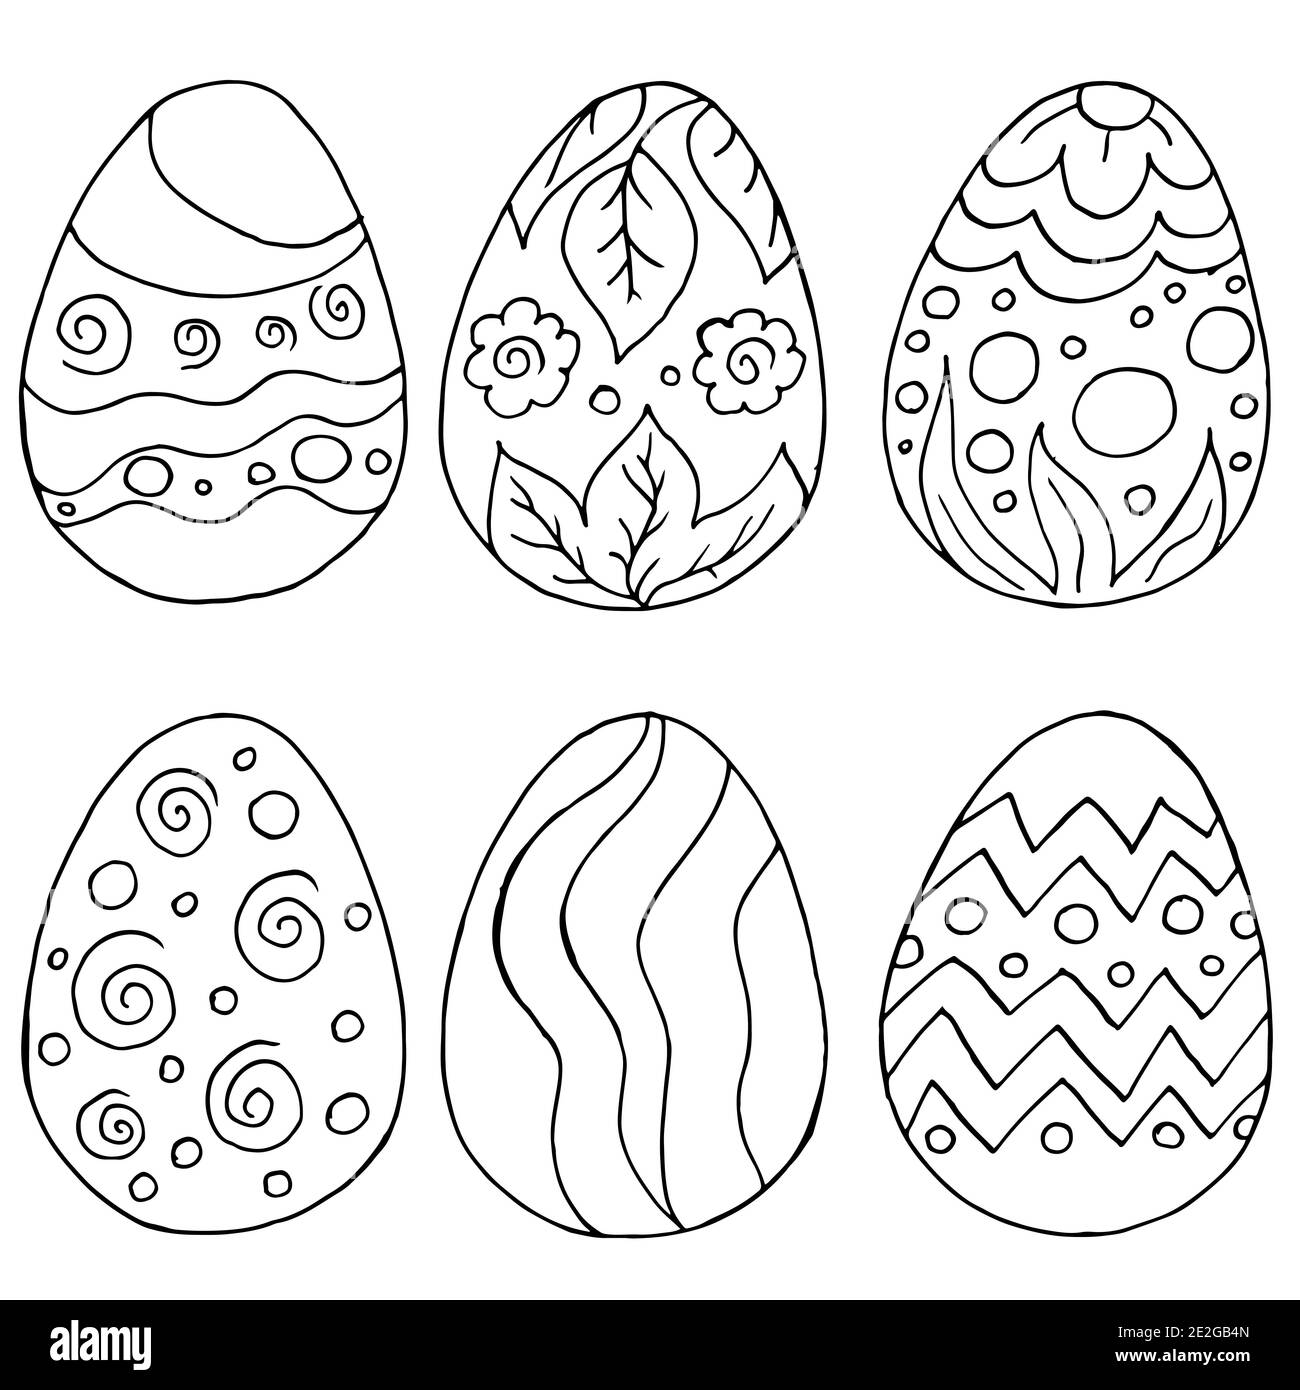 Illustrazione di Pasqua. Buona Pasqua. Raccolta di immagini di uova di Pasqua. Disegno di contorno Illustrazione Vettoriale